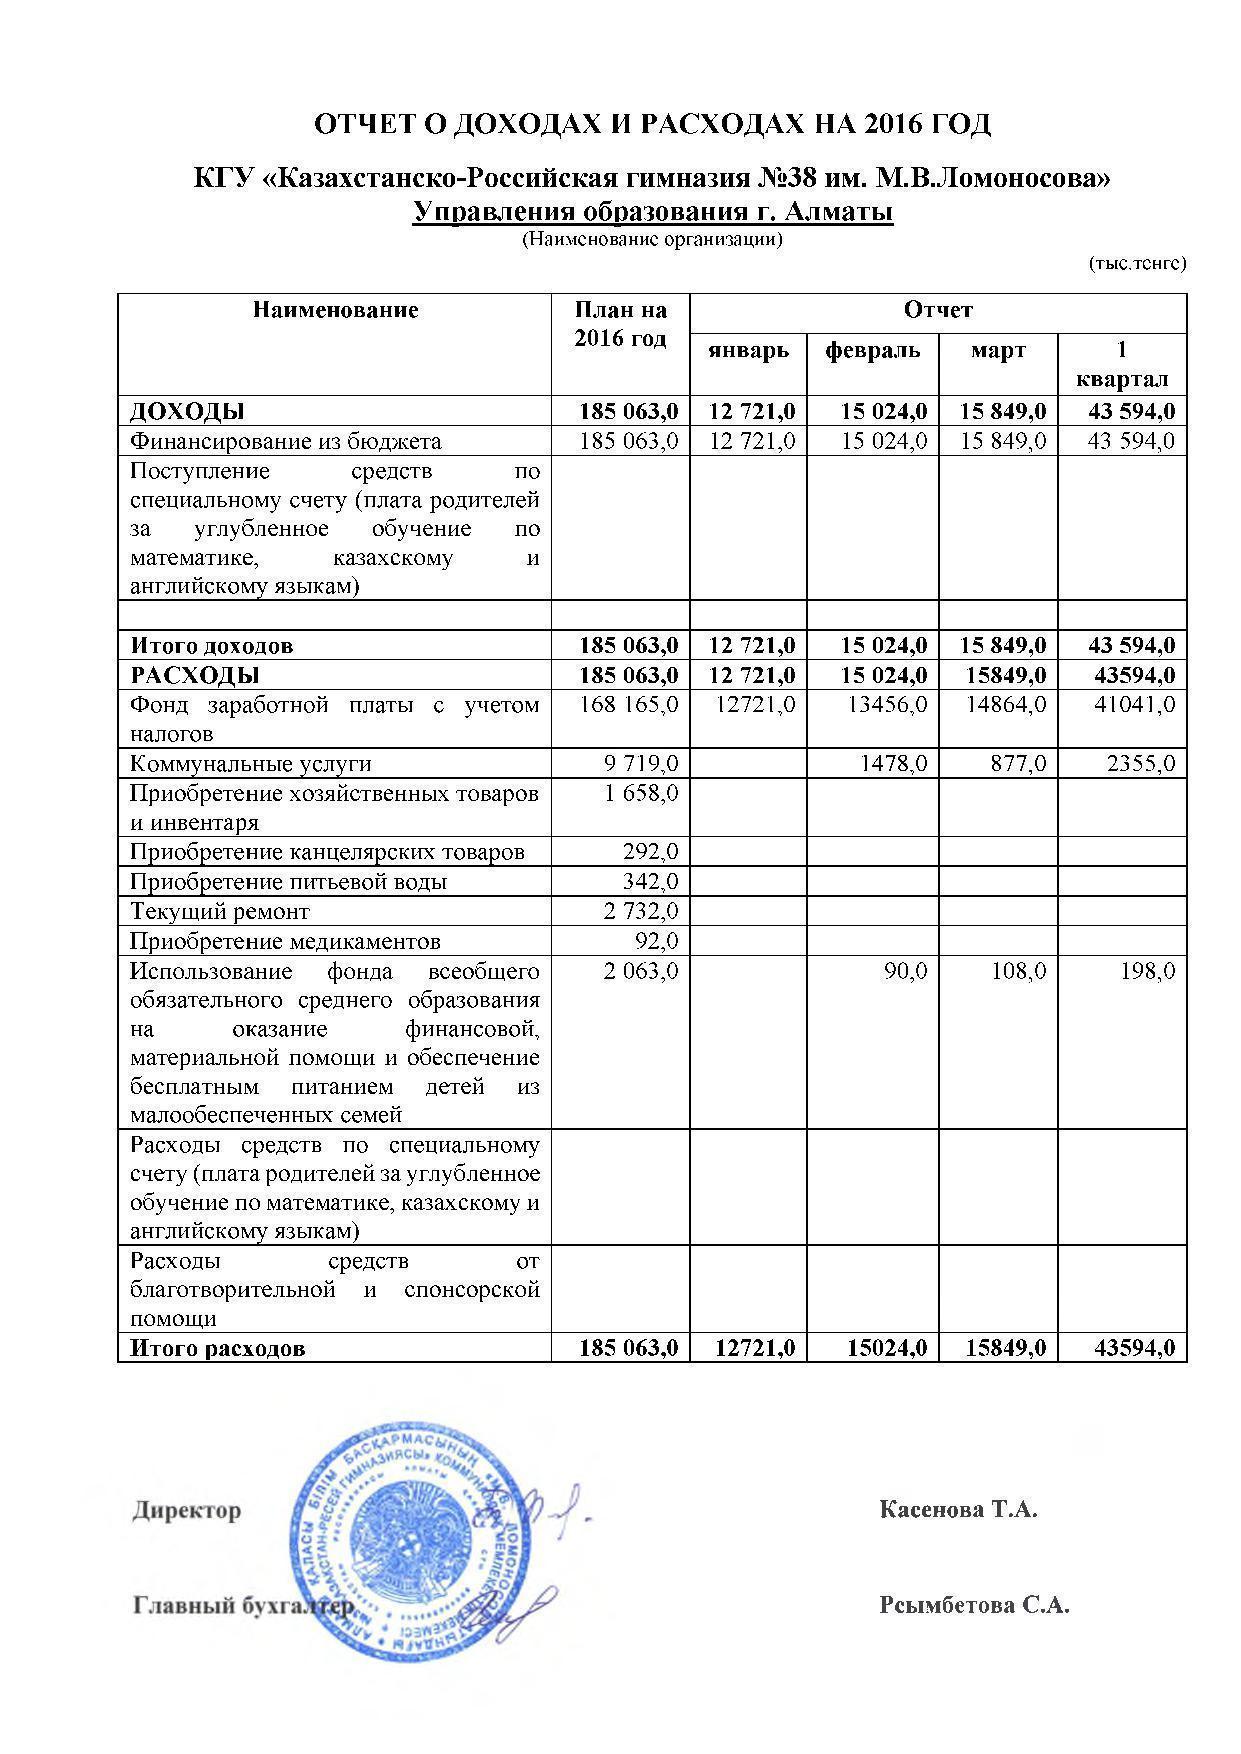 Отчет о доходах и расходах за 1 квартал 2016 и пояснительная записка